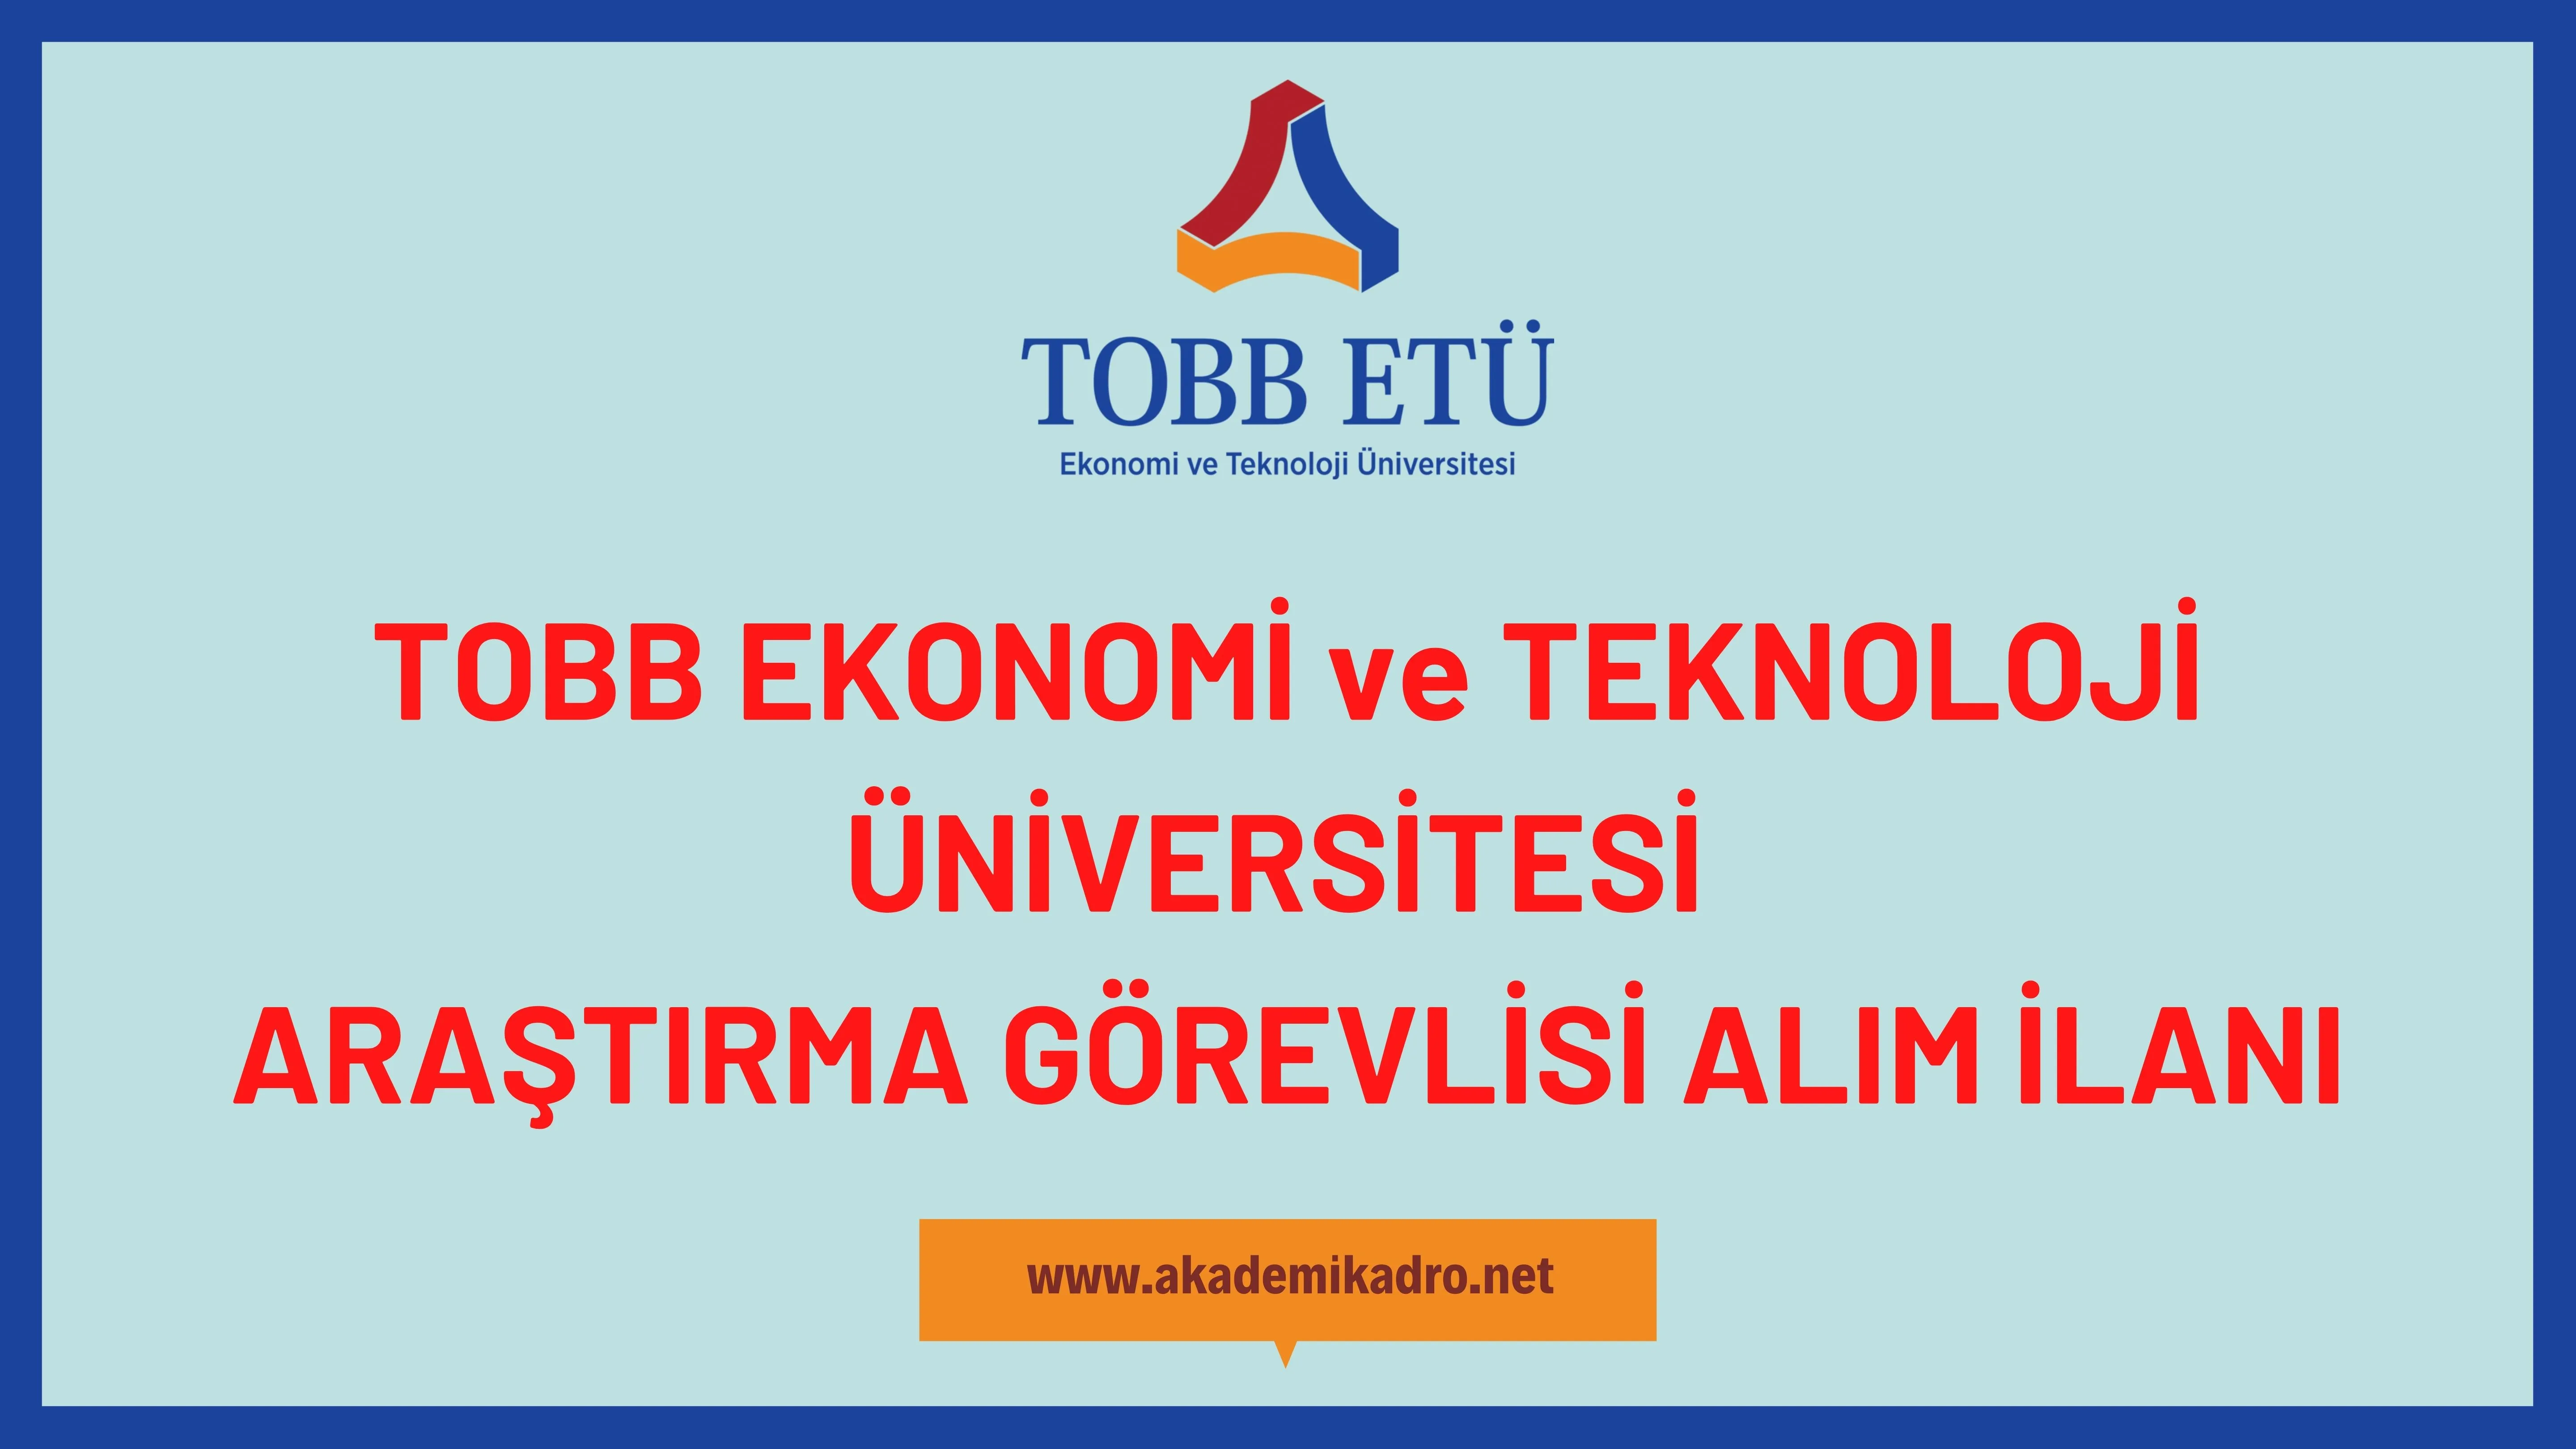 TOBB Ekonomi ve Teknoloji Üniversitesi Araştırma görevlisi alacaktır.